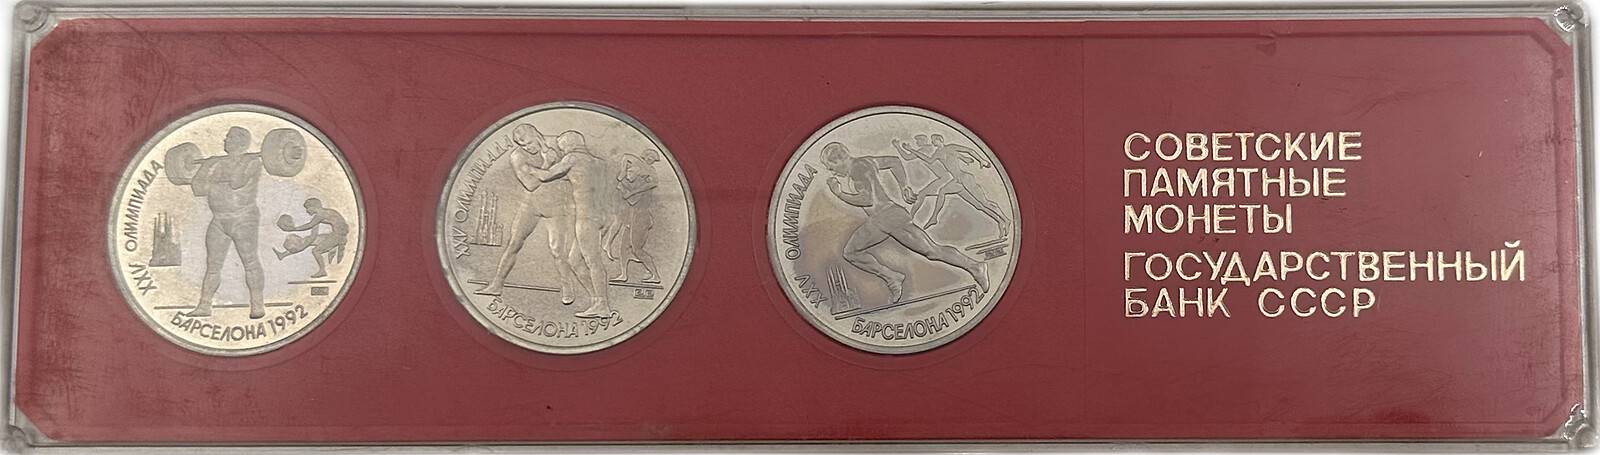 Набор 1 рубль 1991 Олимпиада 1992 Барселона 3 монеты в коробке